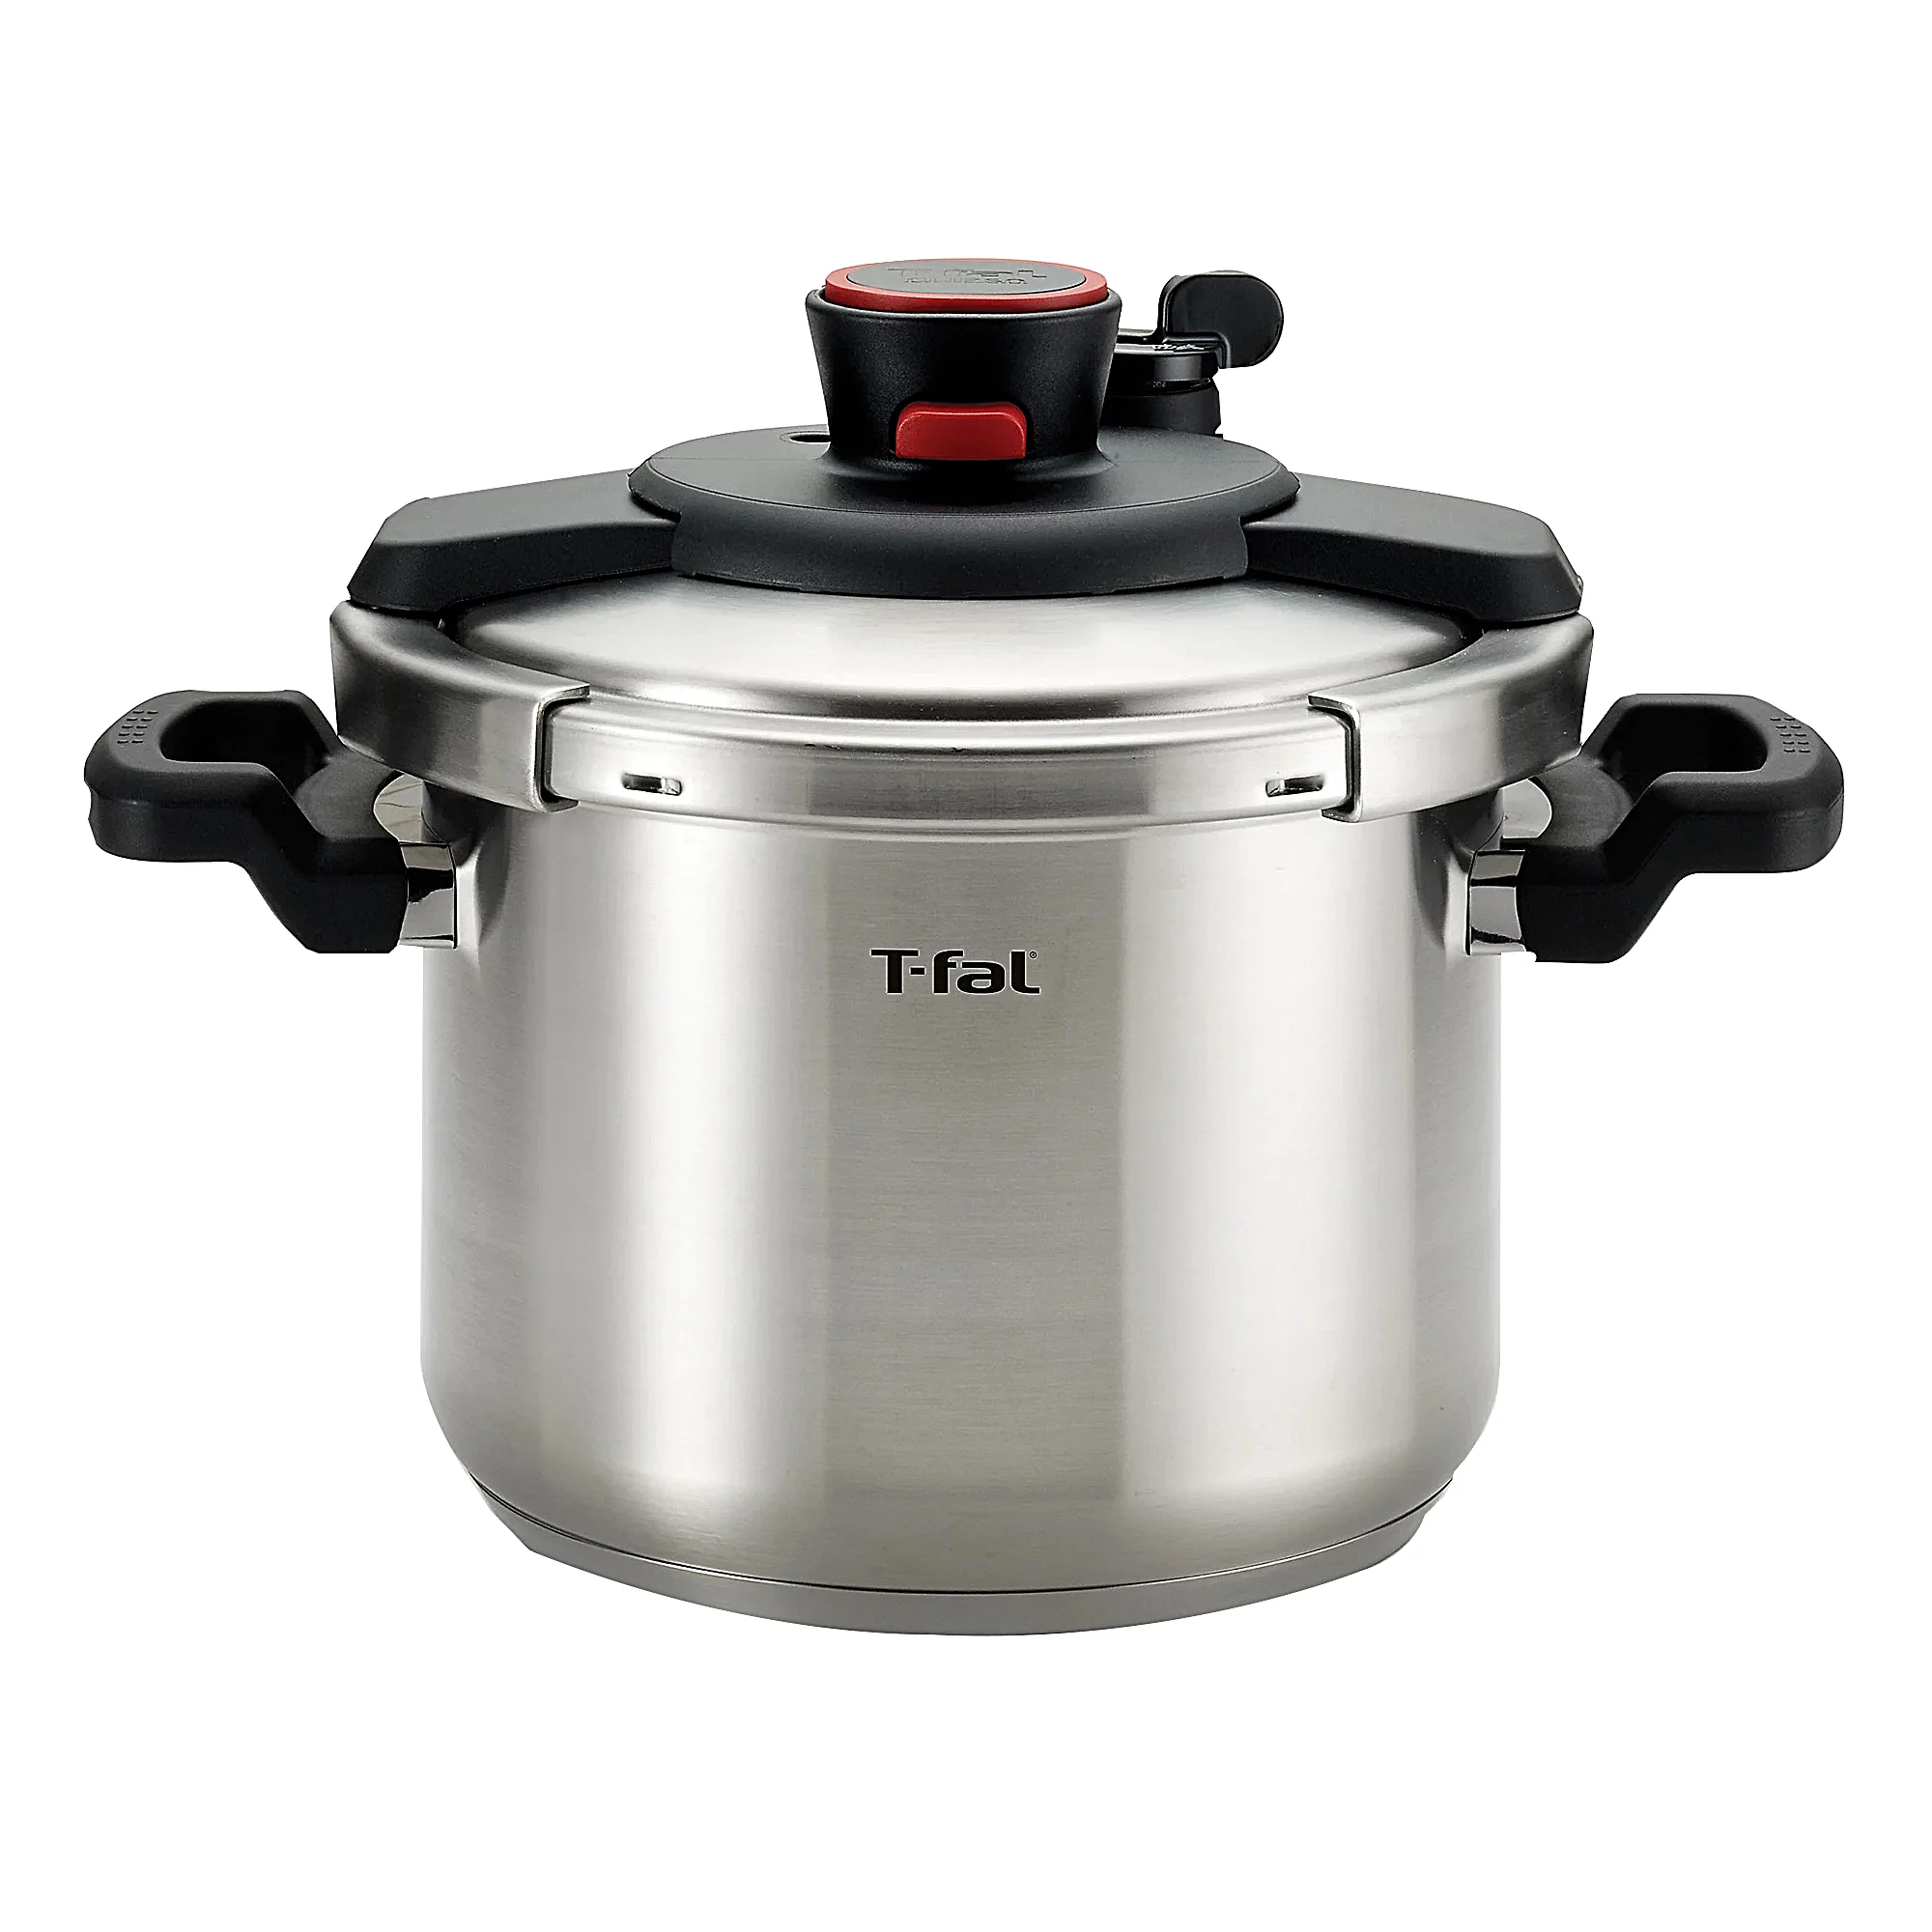  T-fal 6.3 Qt Pressure Cooker  - $199.00